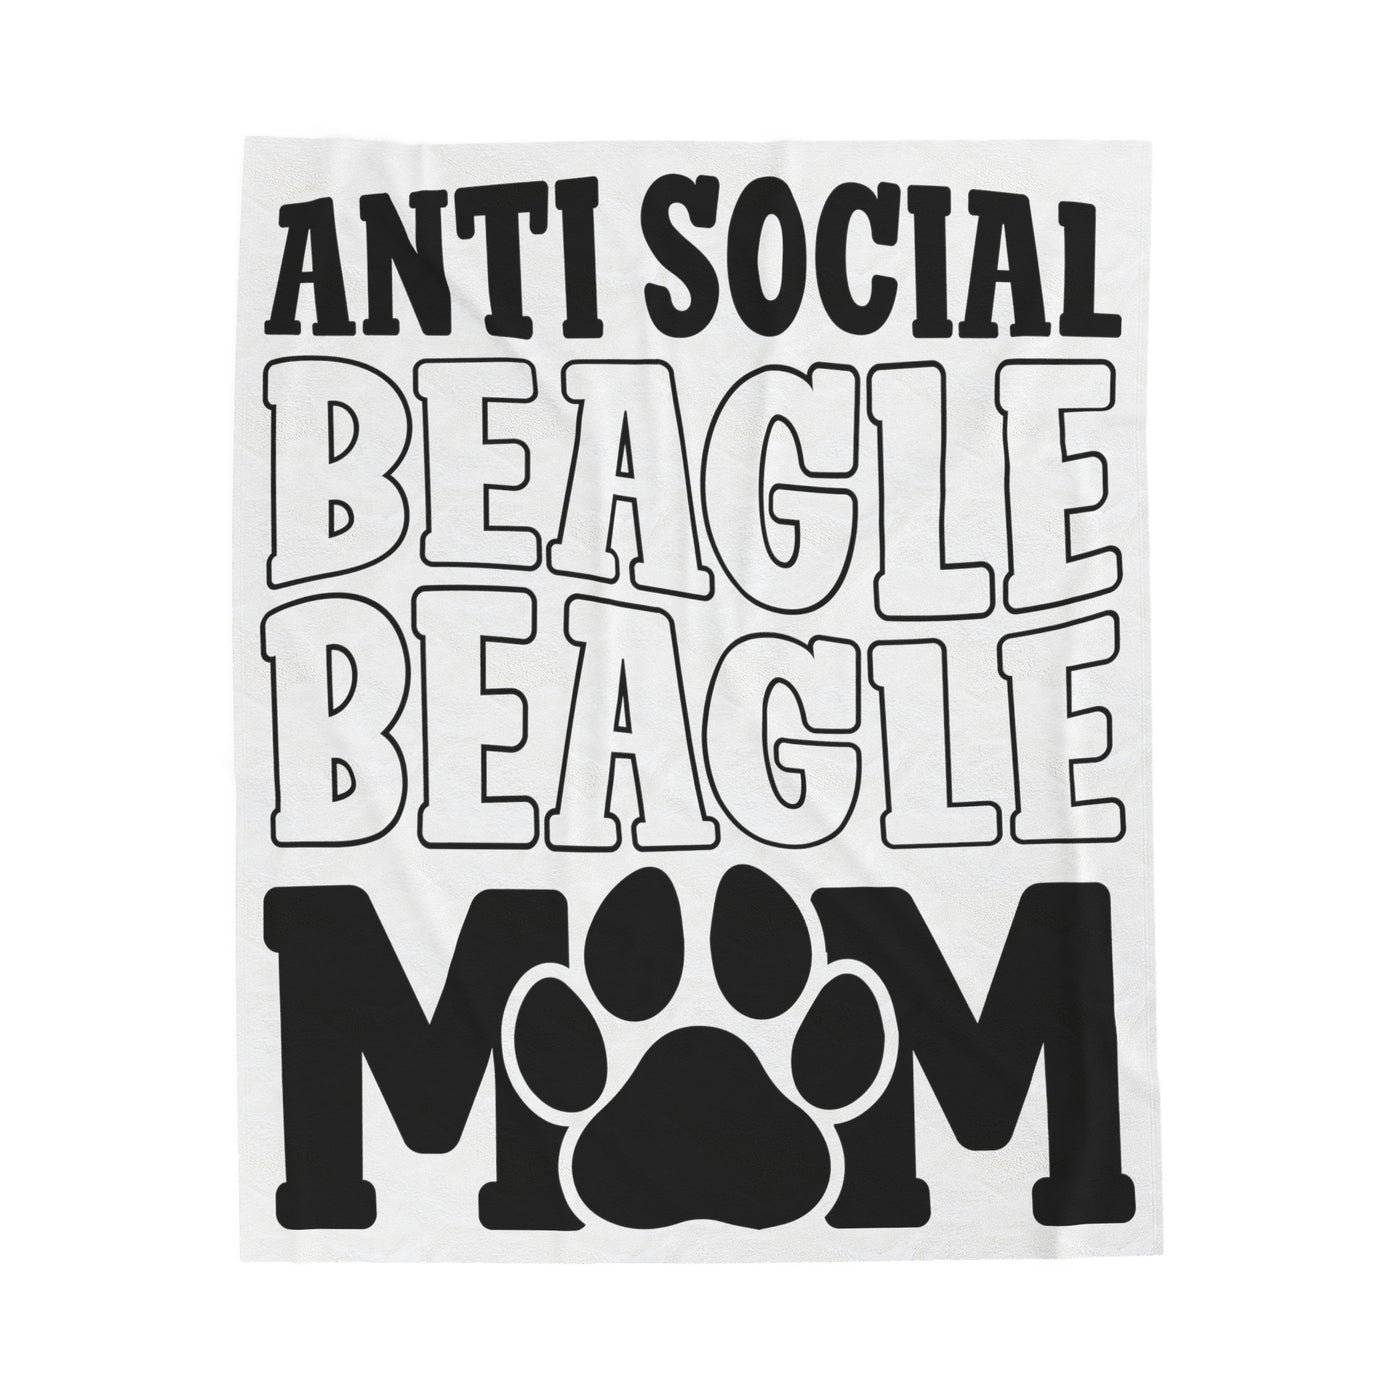 Antisocial Beagle Mom Blanket